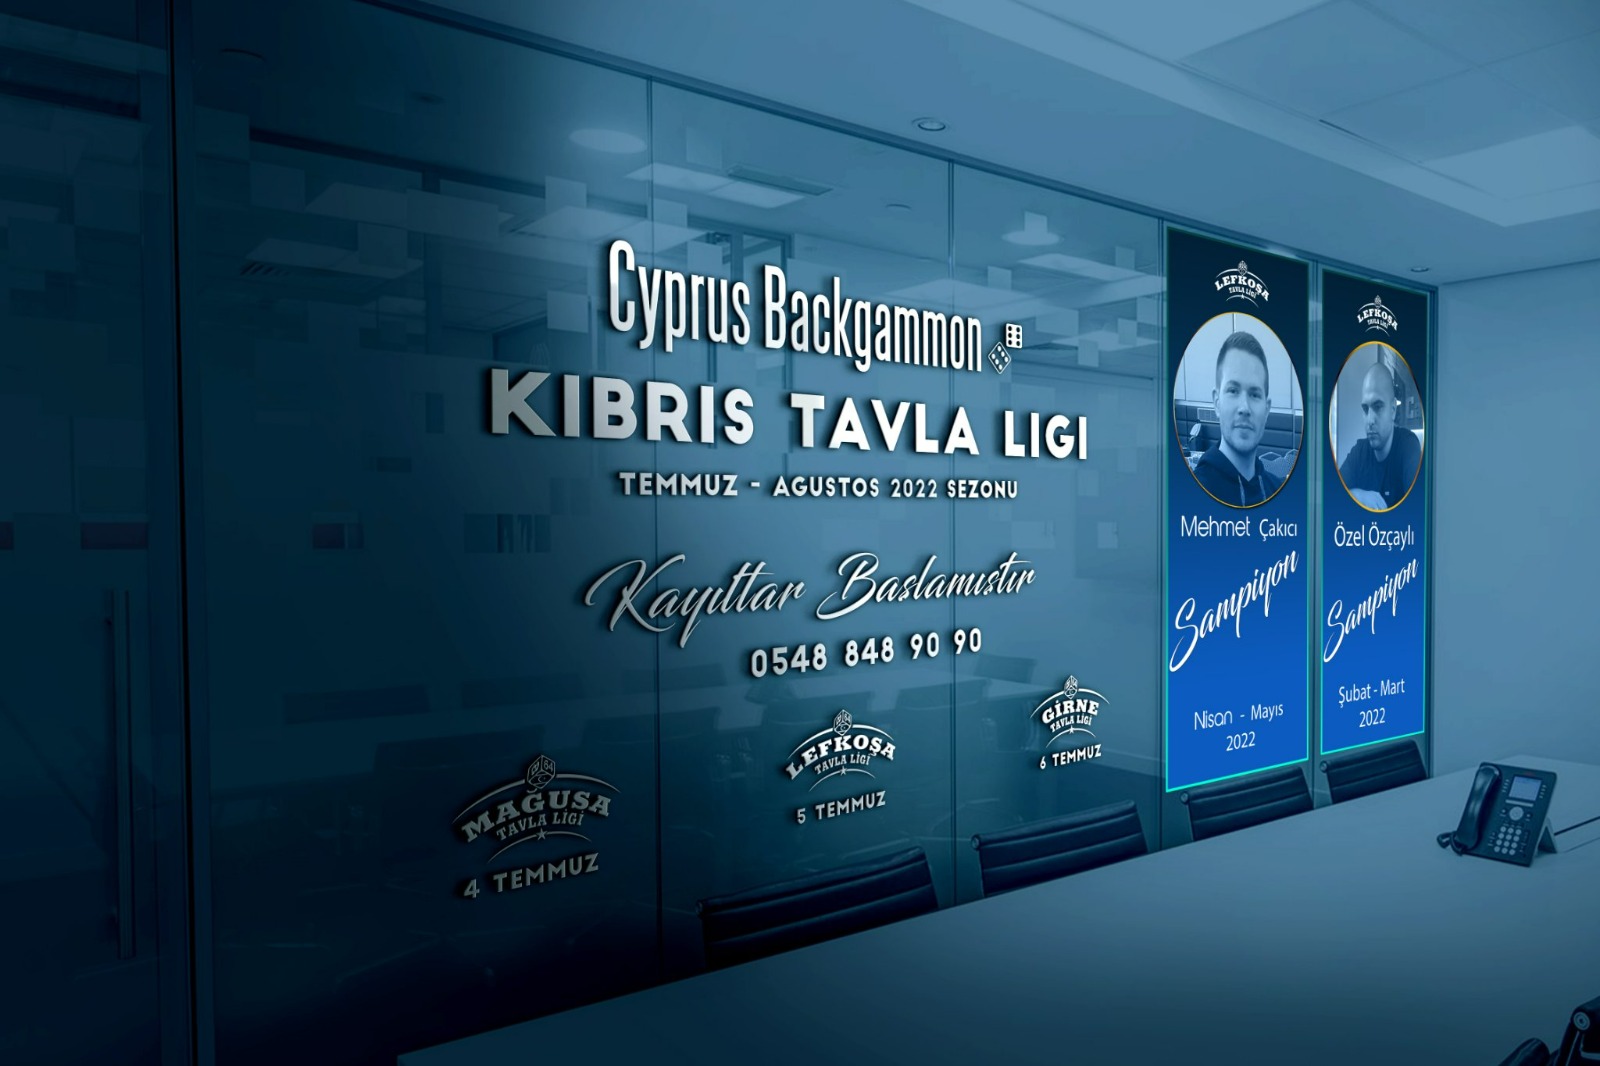 Kıbrıs Tavla Ligi”, Temmuz-Ağustos 2022 sezonu bu akşam Mağusa'da başlıyor